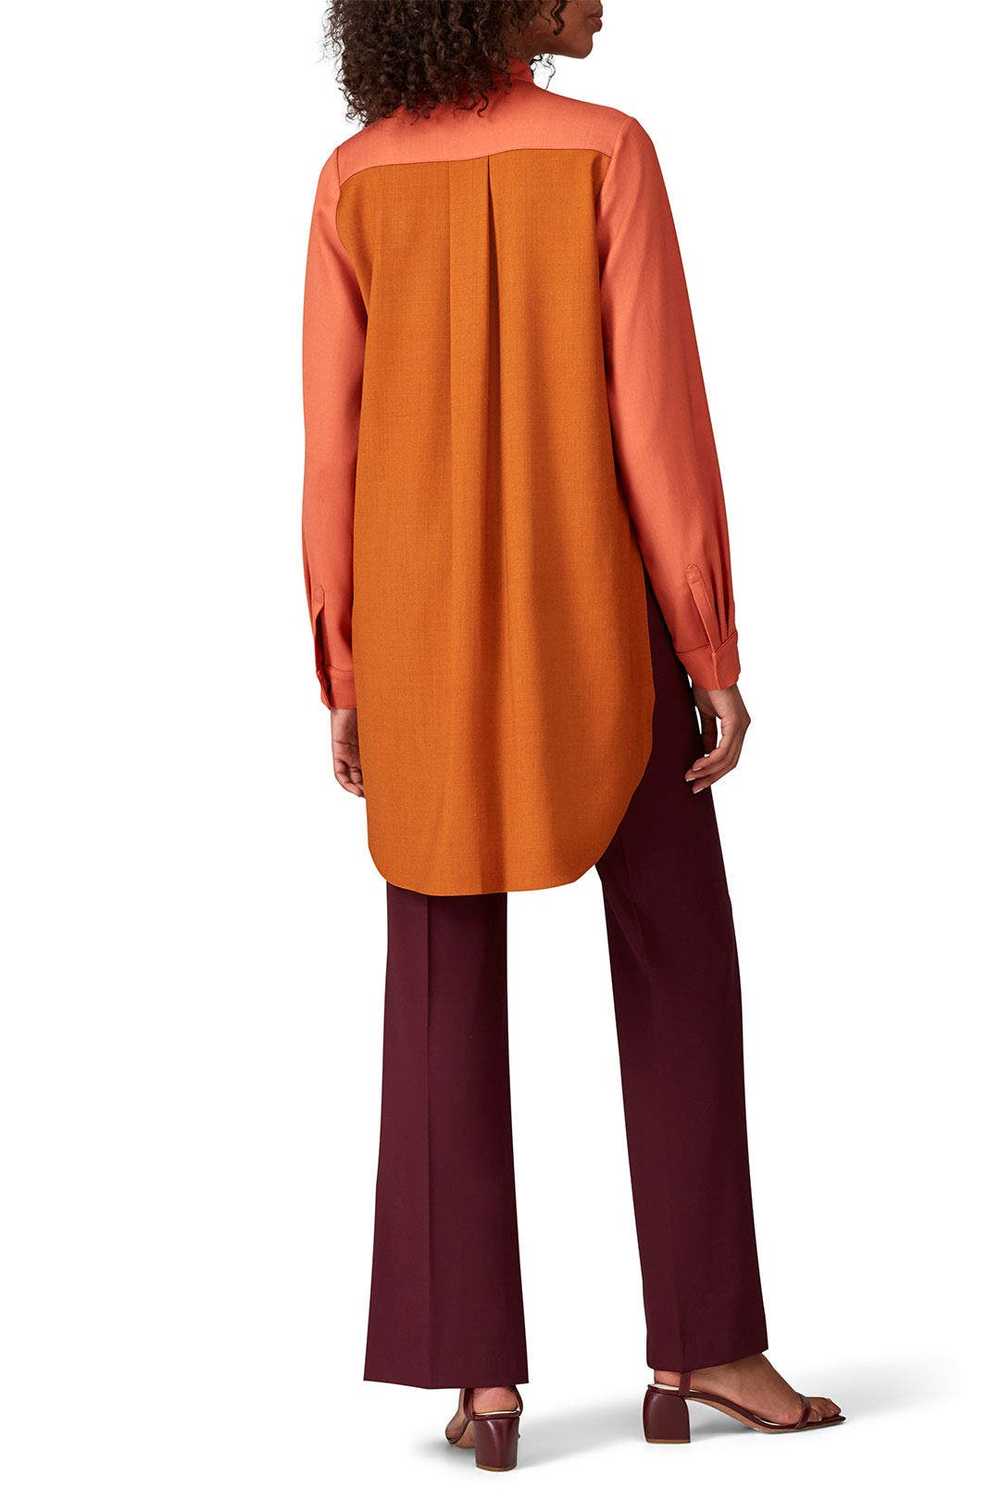 Roksanda Burnt Orange Tailoring Top - image 3